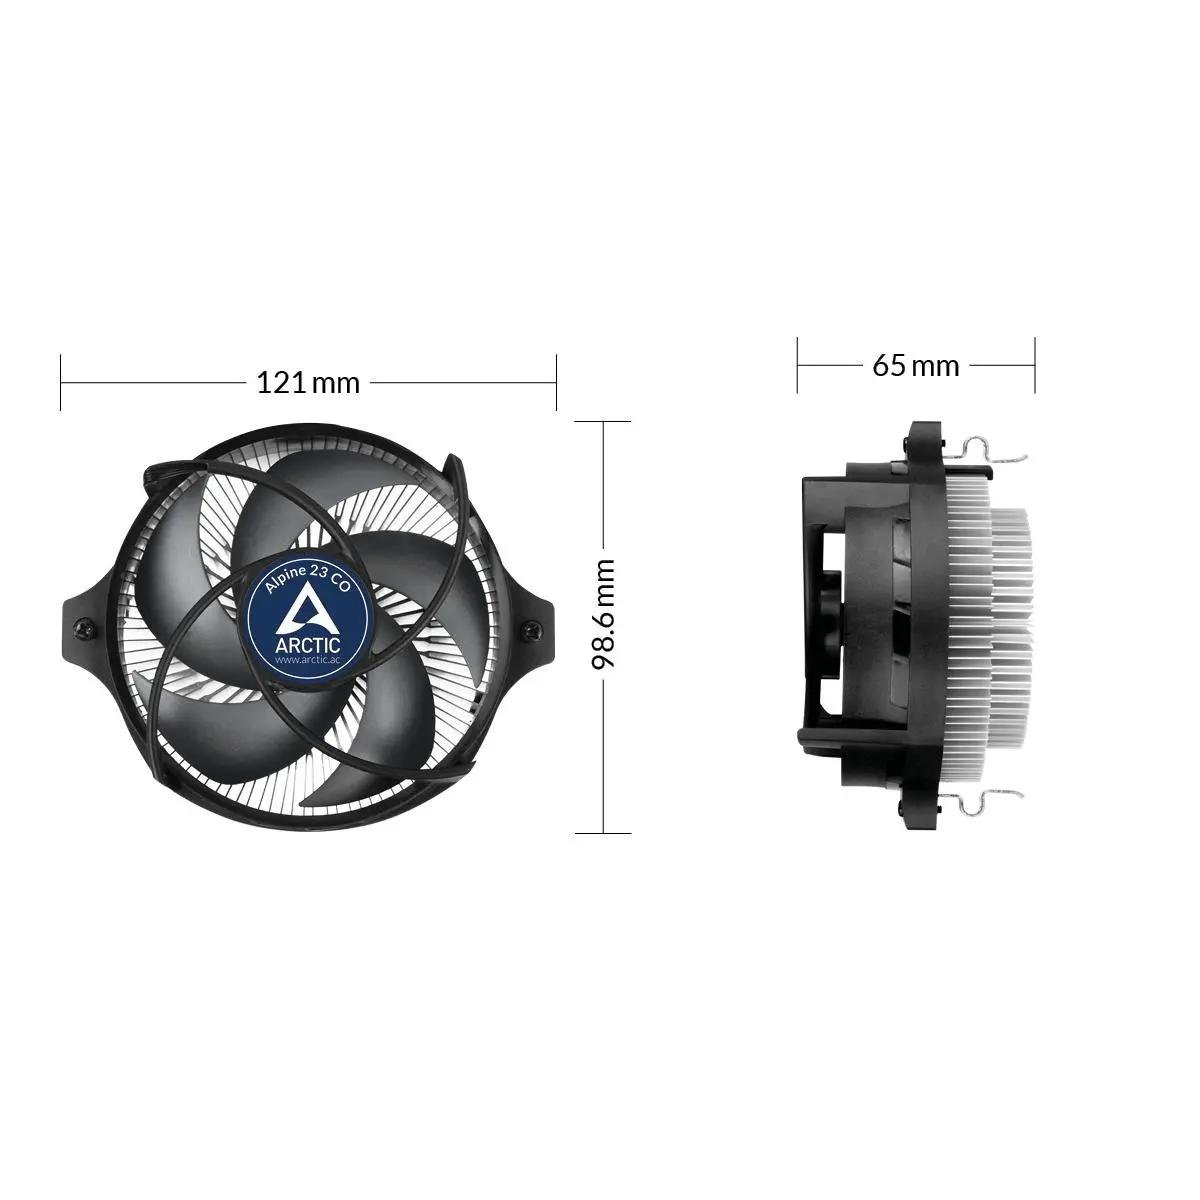 Охладител за процесор Arctic Alpine 23 CO, AM4 - image 5